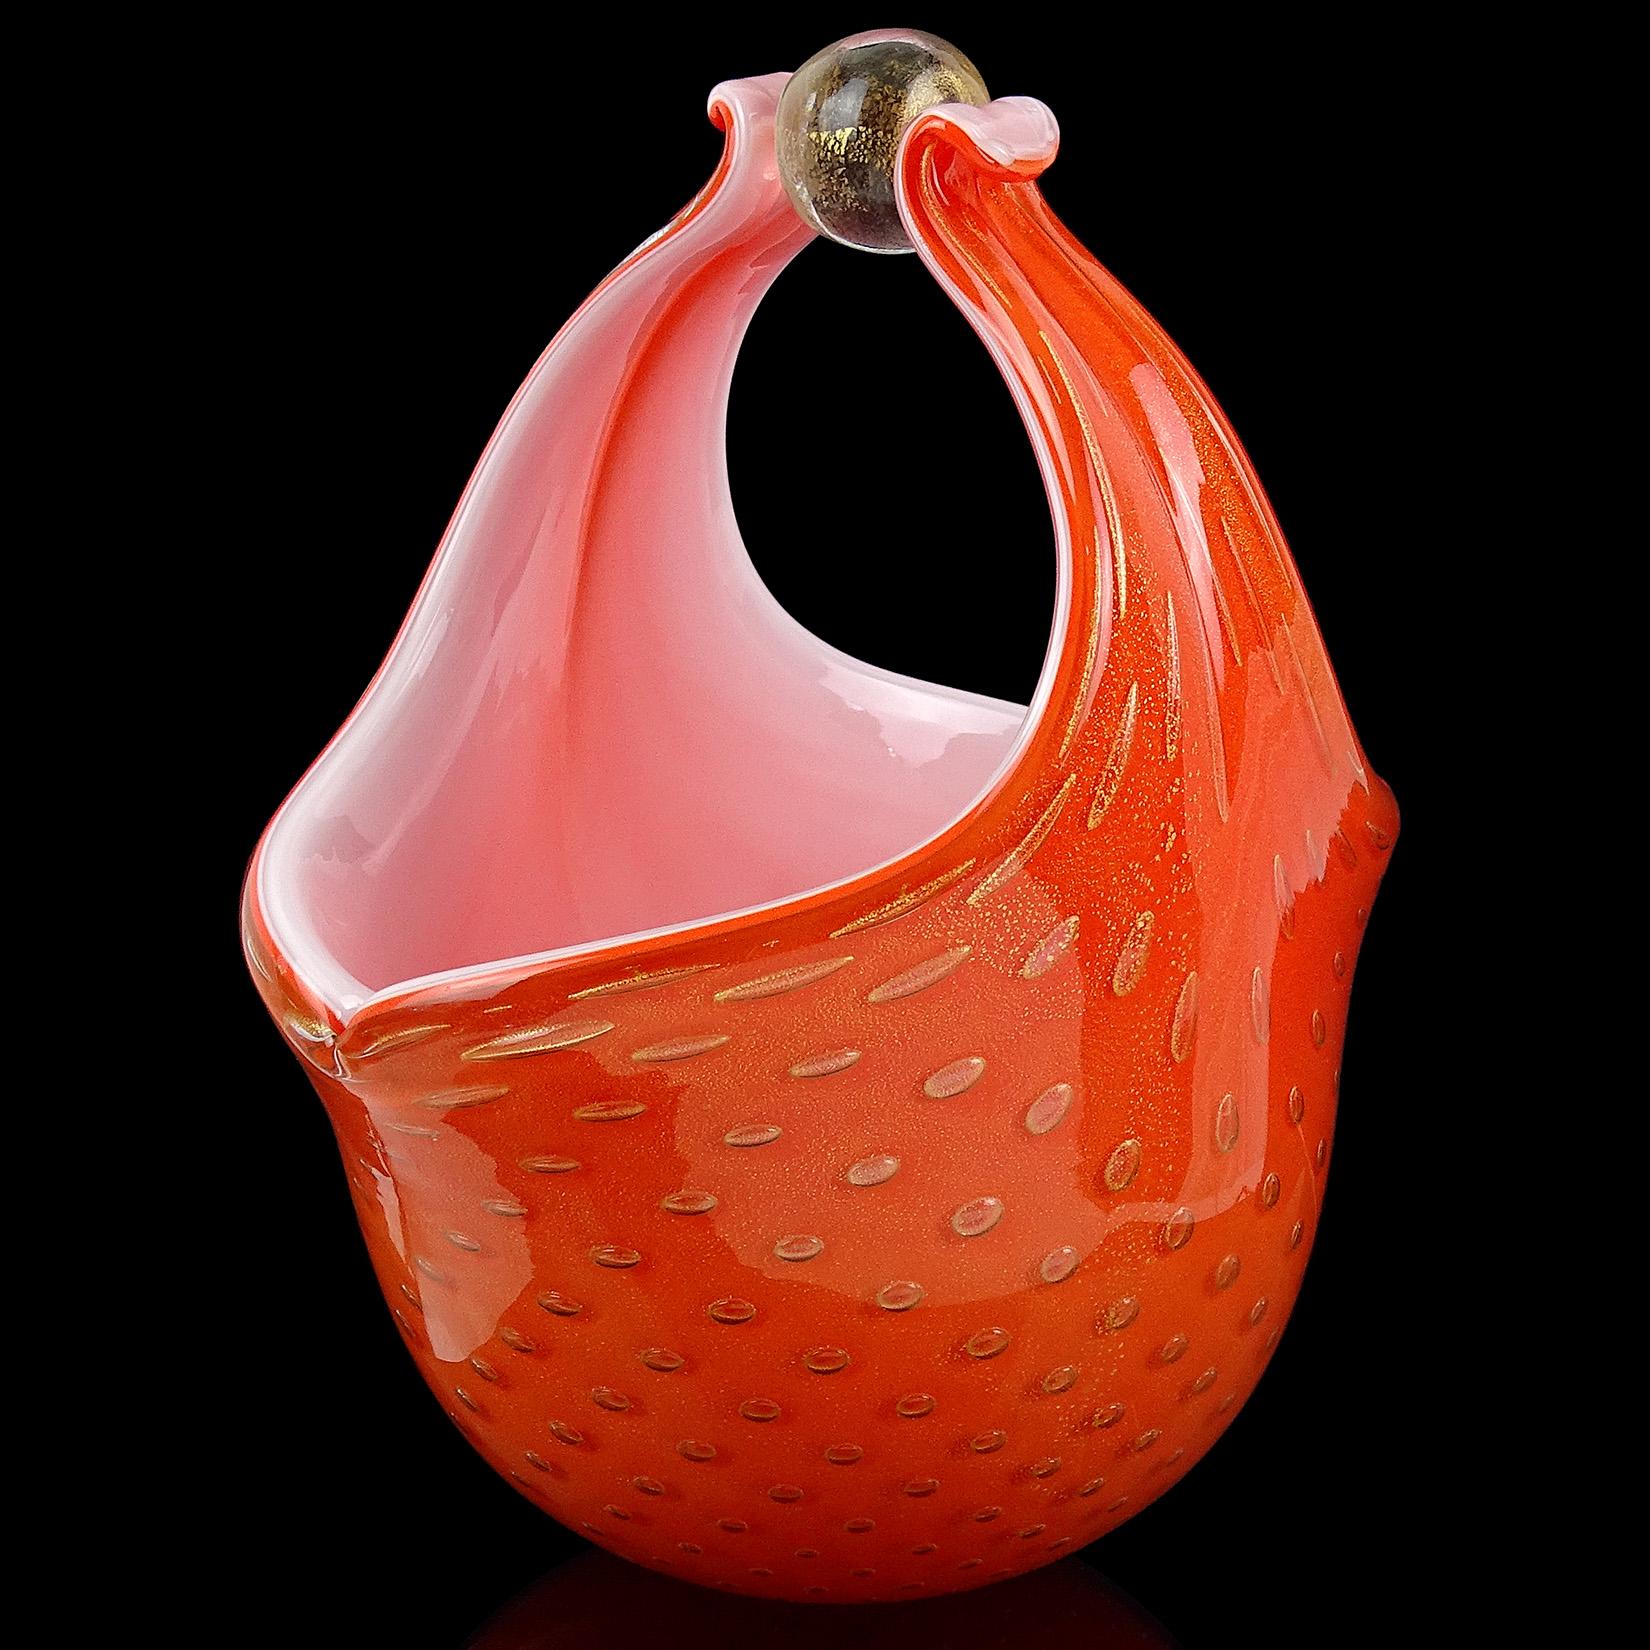 Magnifique panier / vase vintage en verre d'art italien soufflé à la main de Murano, orange, bulles contrôlées et mouchetures d'or. Documenté au designer Alfredo Barbini et publié dans son catalogue, vers 1950-1960. Il comporte deux poignées